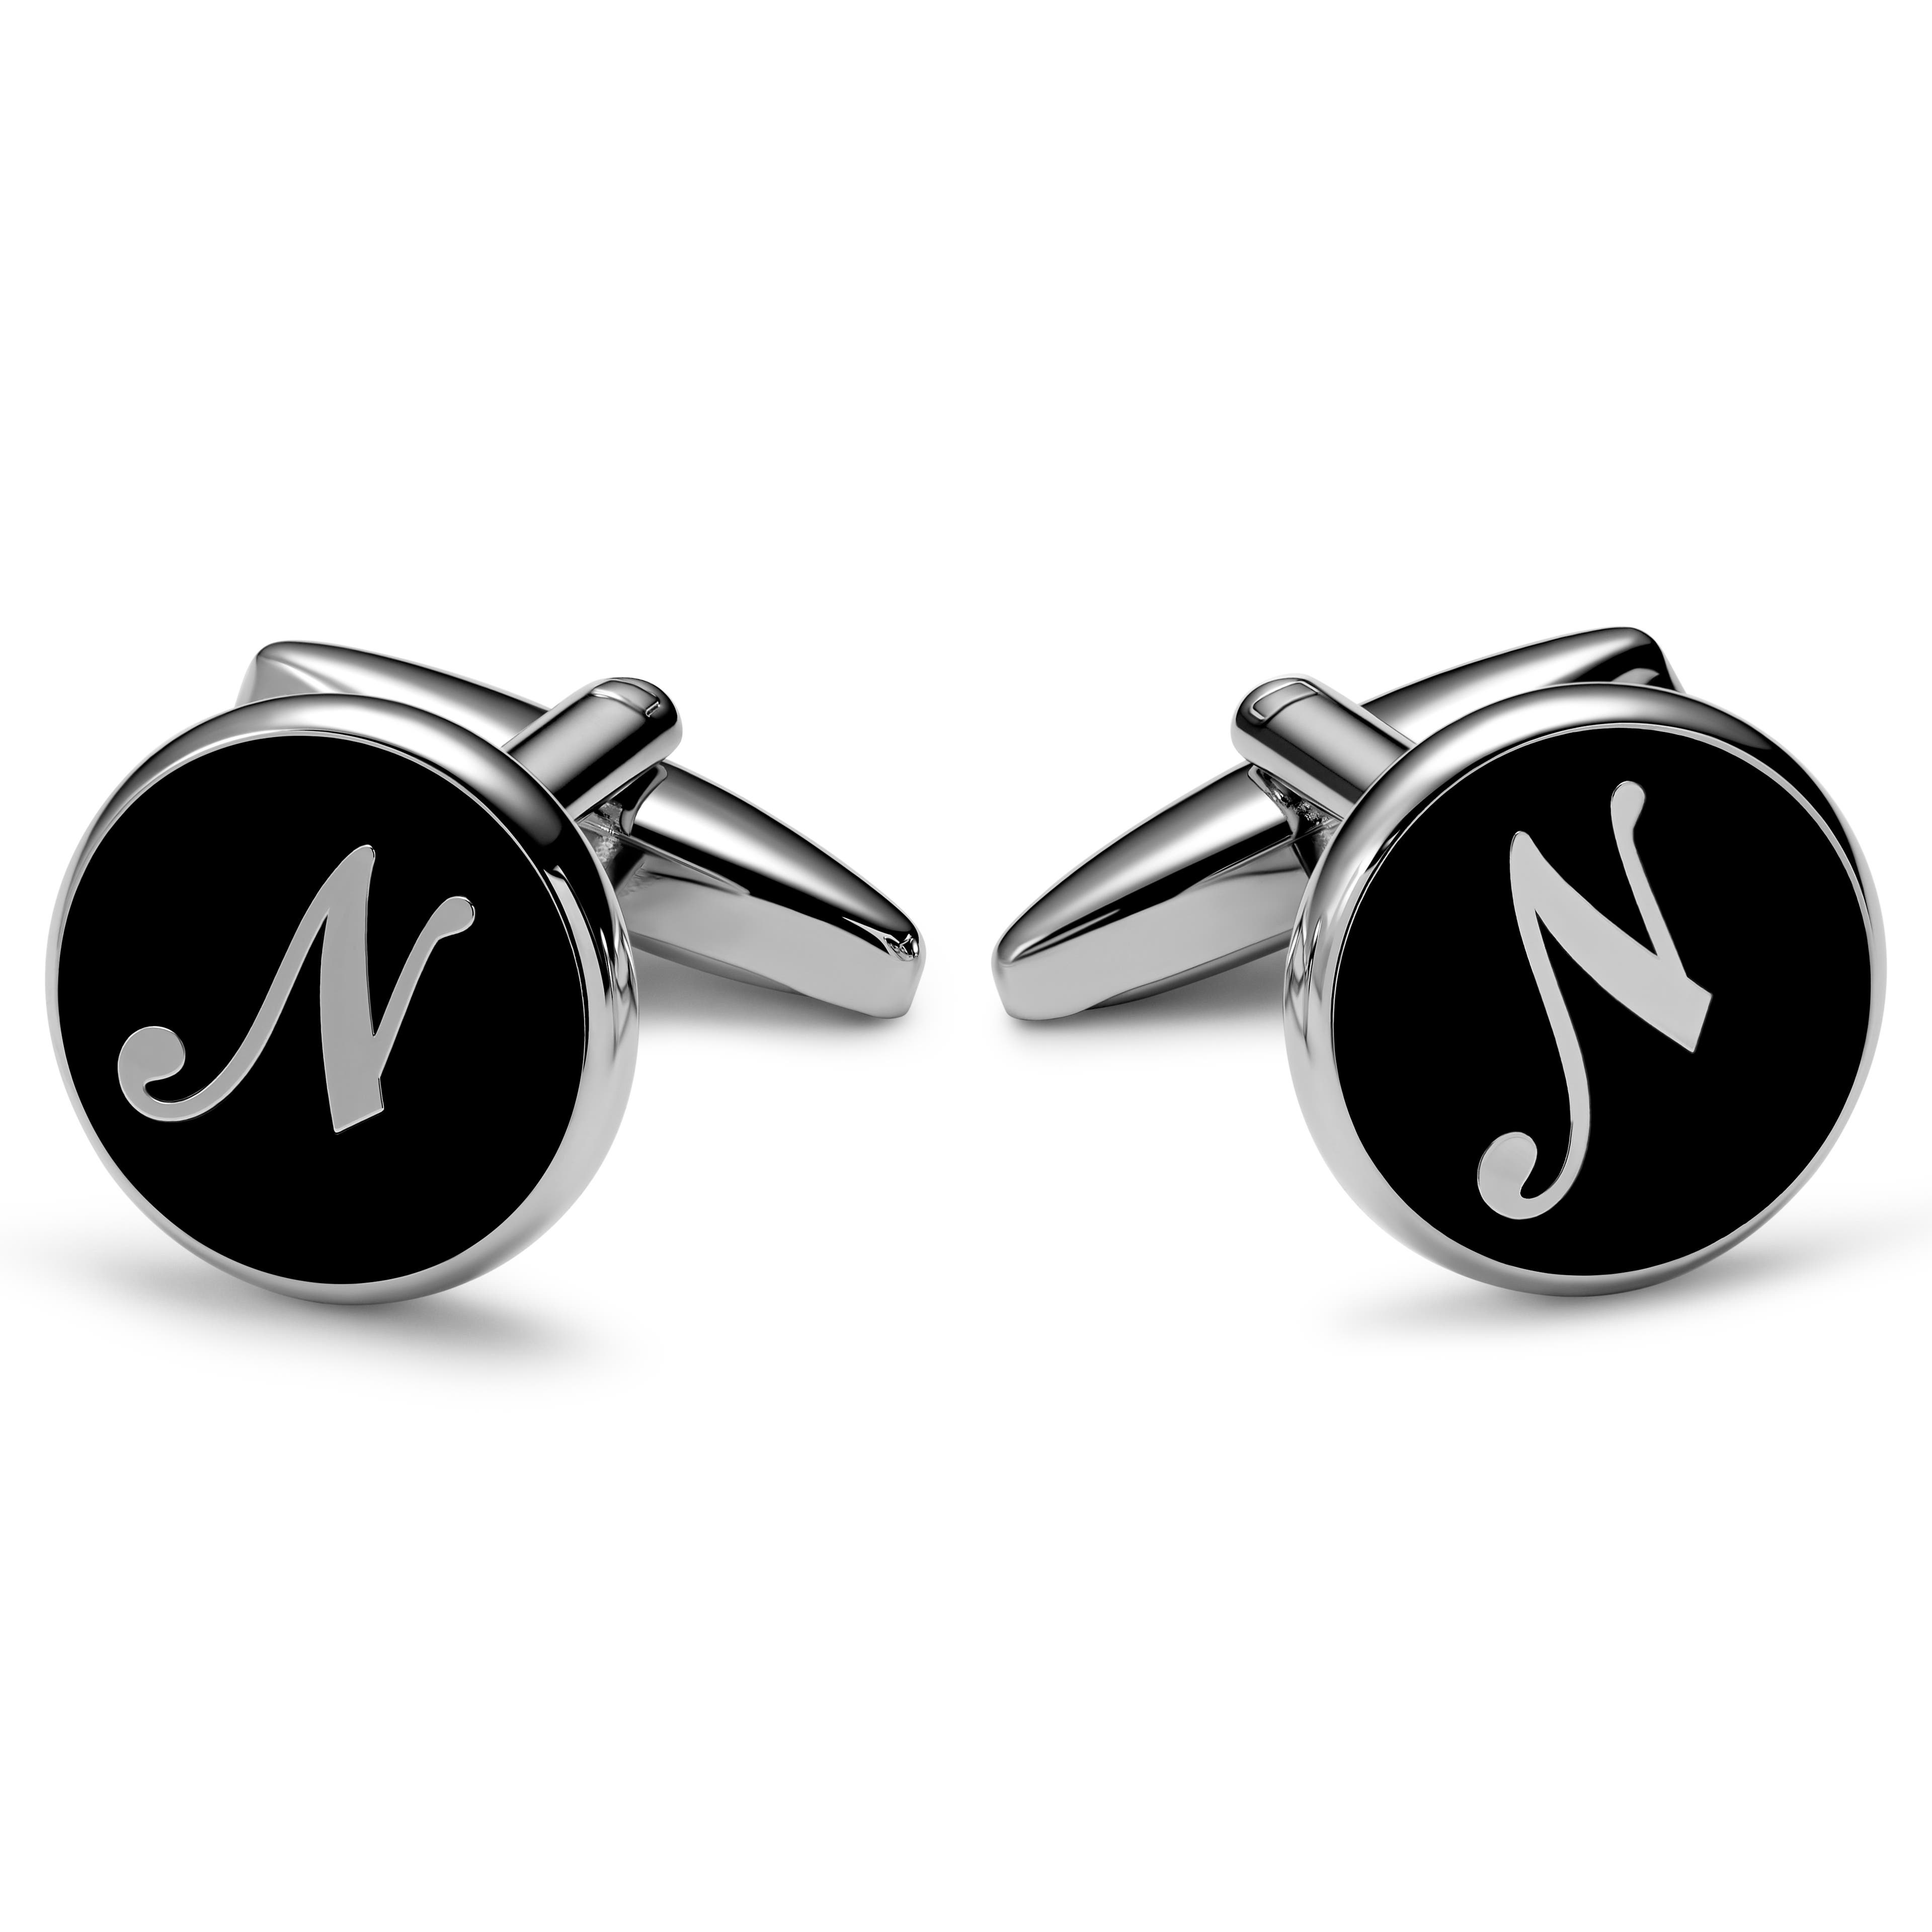 Kulaté manžetové knoflíčky s iniciálou N ve stříbrné a černé barvě